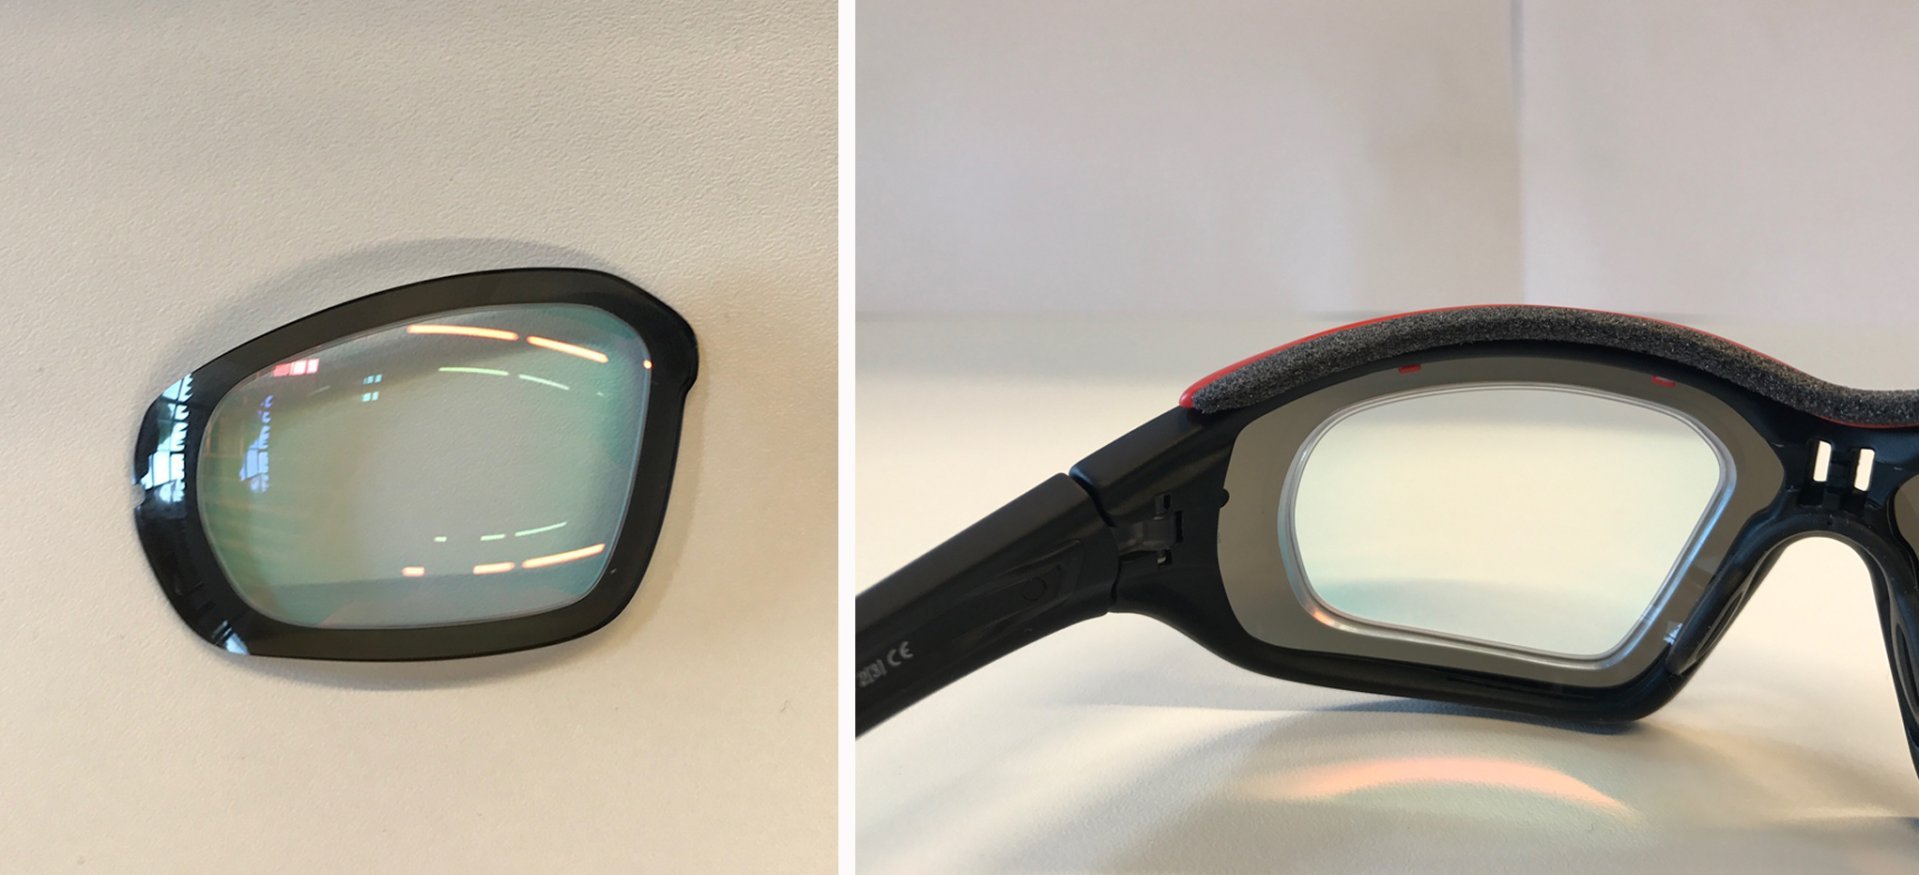 links: Einsatz und das geschliffene Glas; rechts: Einsatz und Glas in der Brille